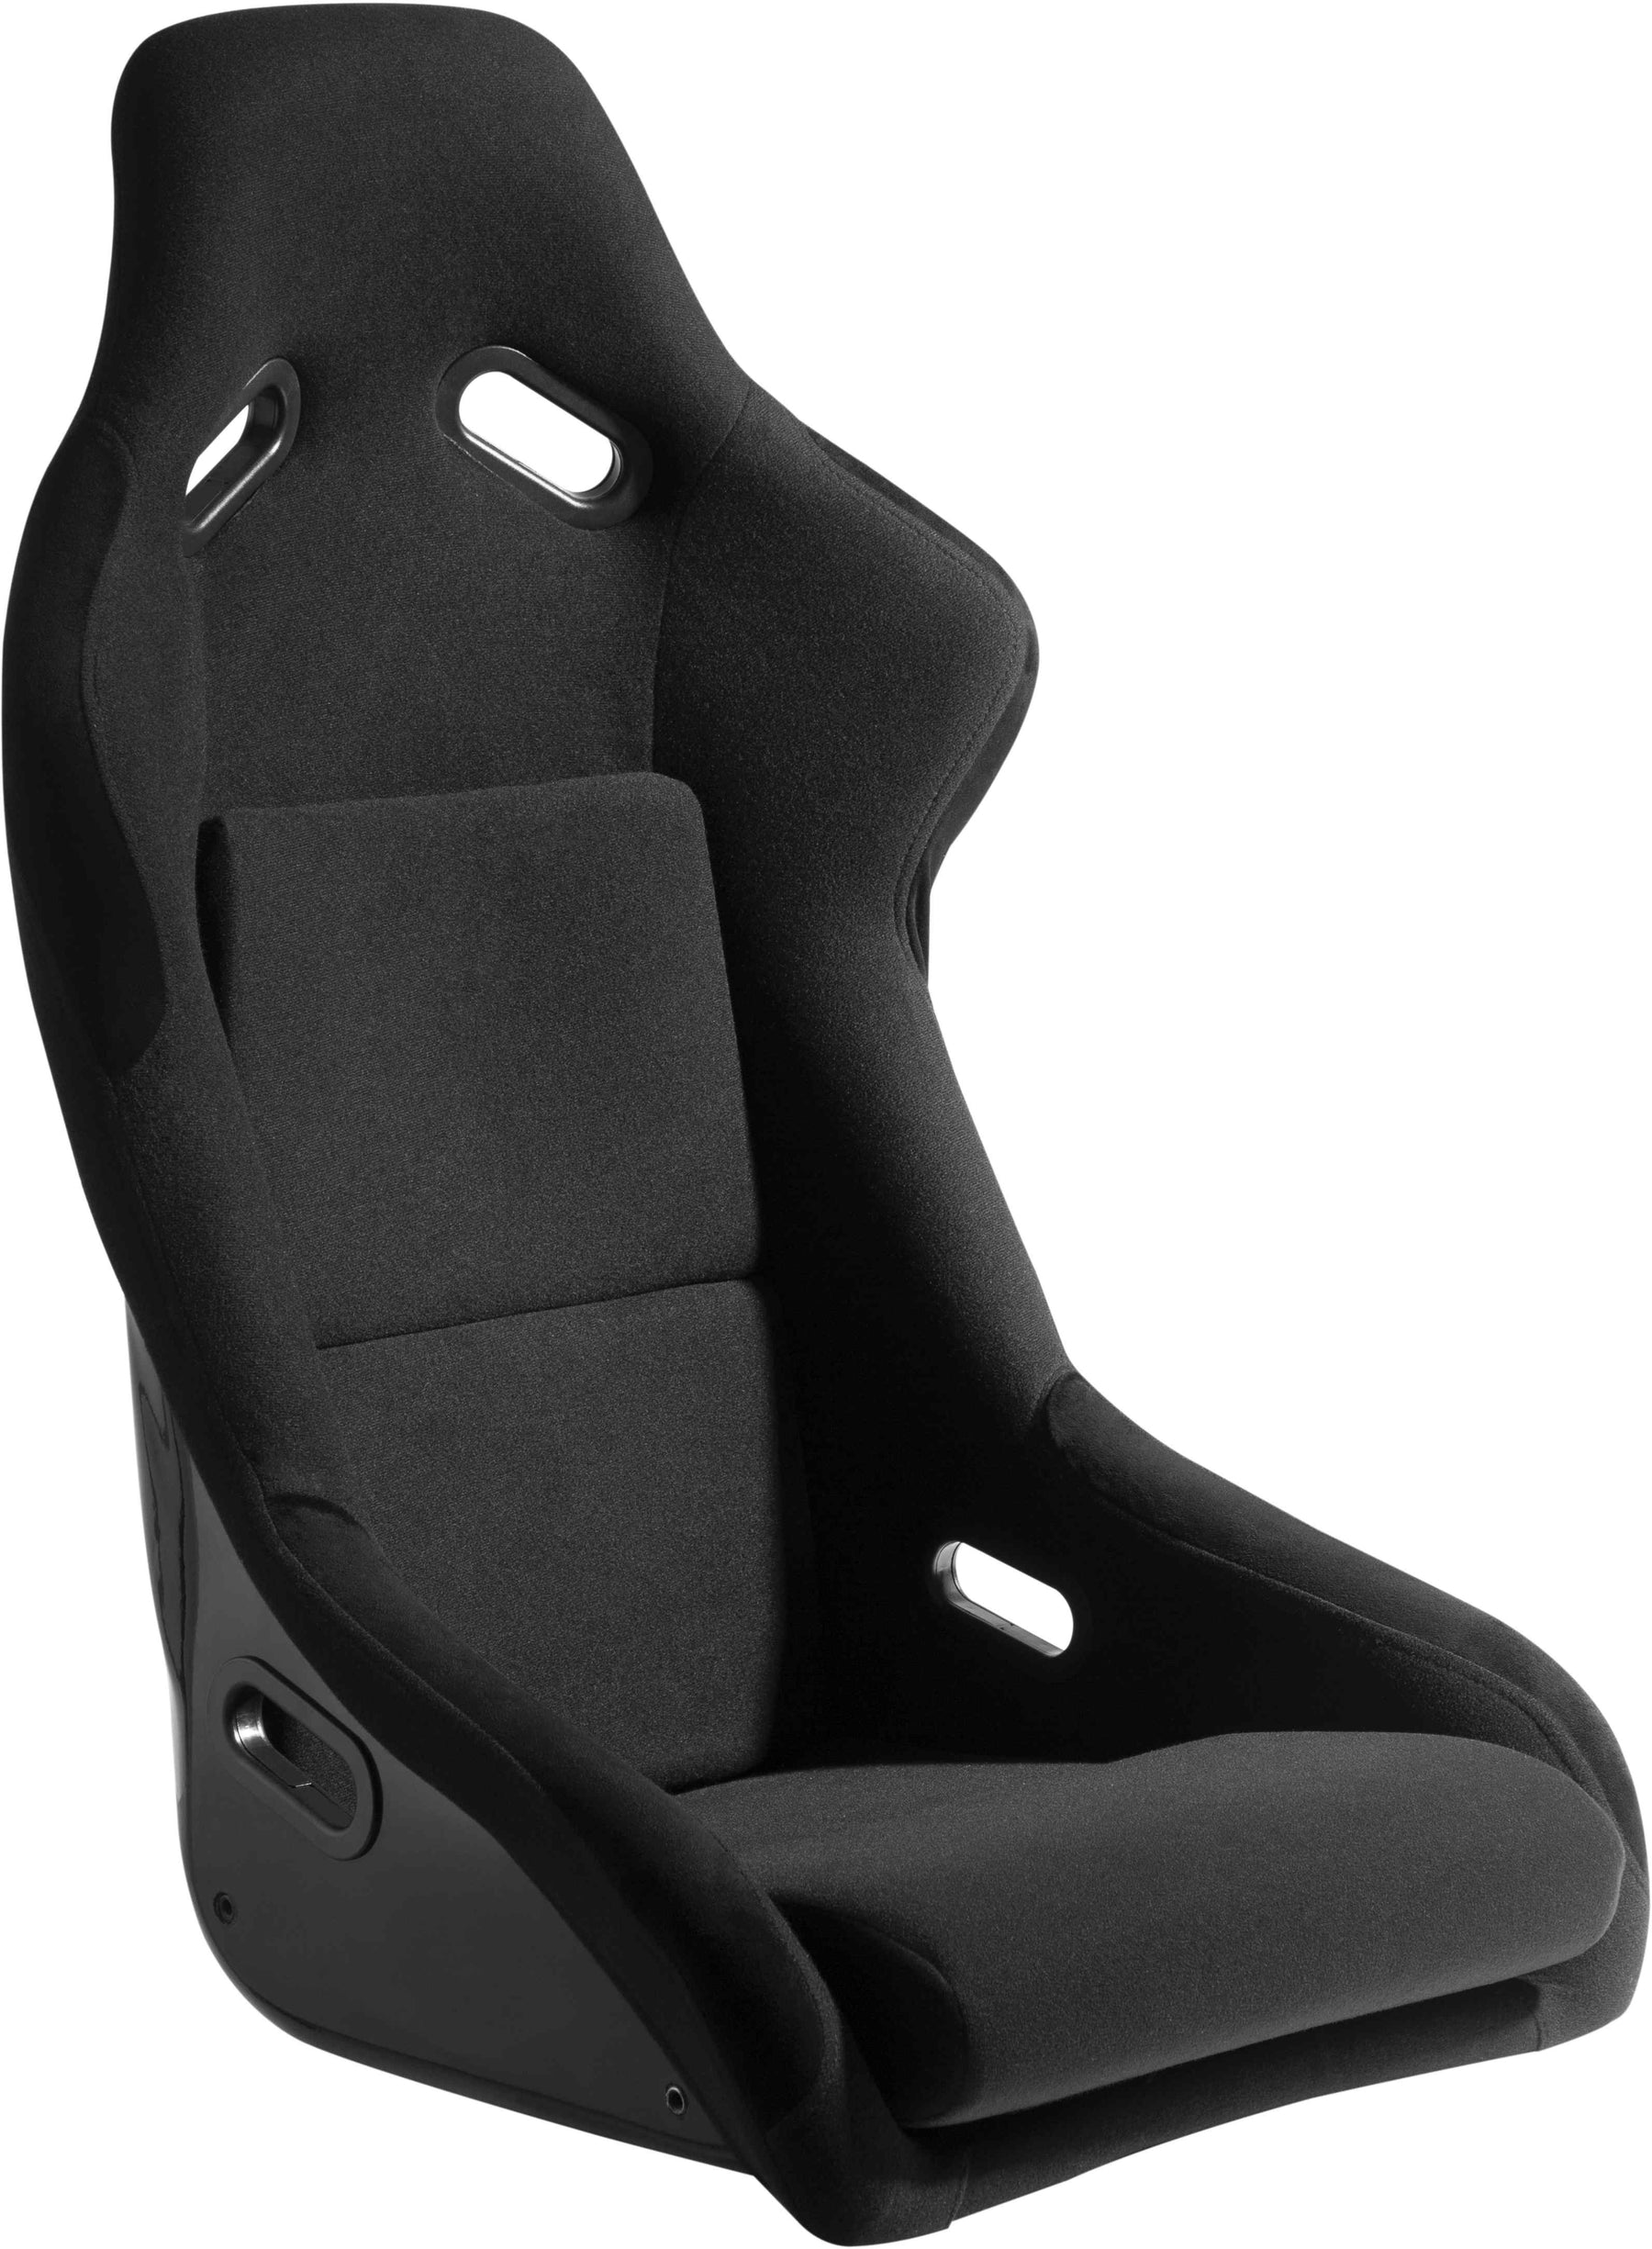 Oplite - GTR Bucket Seat